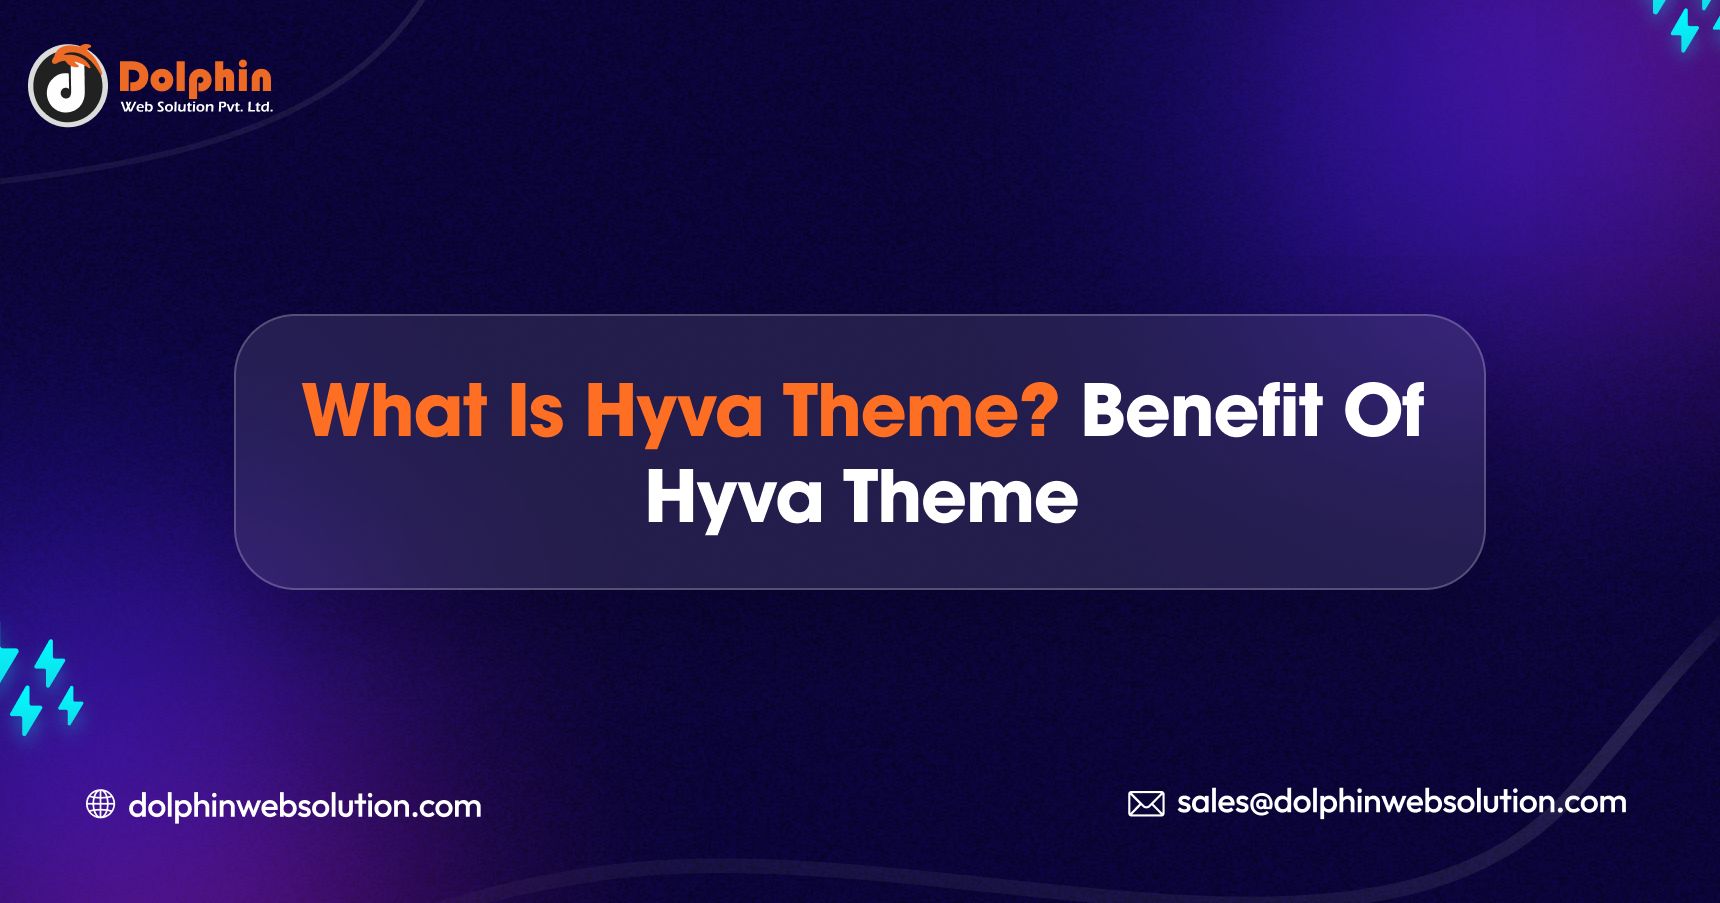 Key Benefits Of Hyva Theme